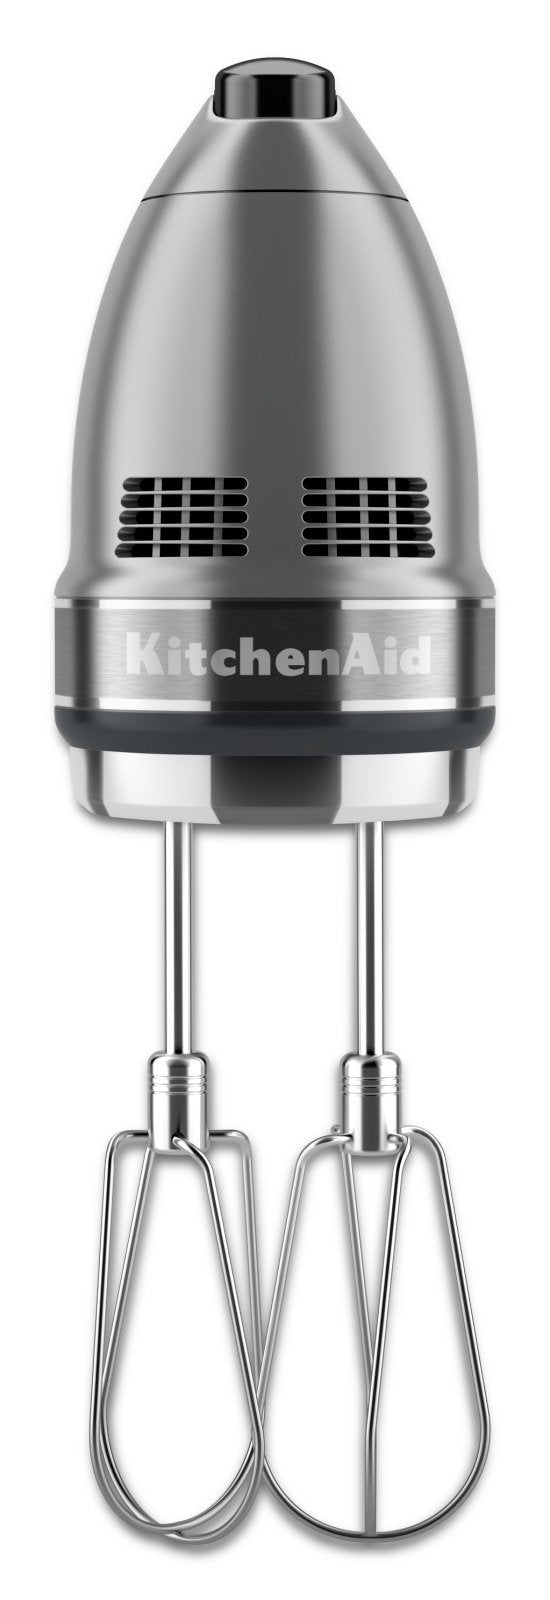 KitchenAid 7-Speed Hand Mixer - KHM7210CU|Batteur à main KitchenAid à 7 vitesses - KHM7210CU|KHM7210S